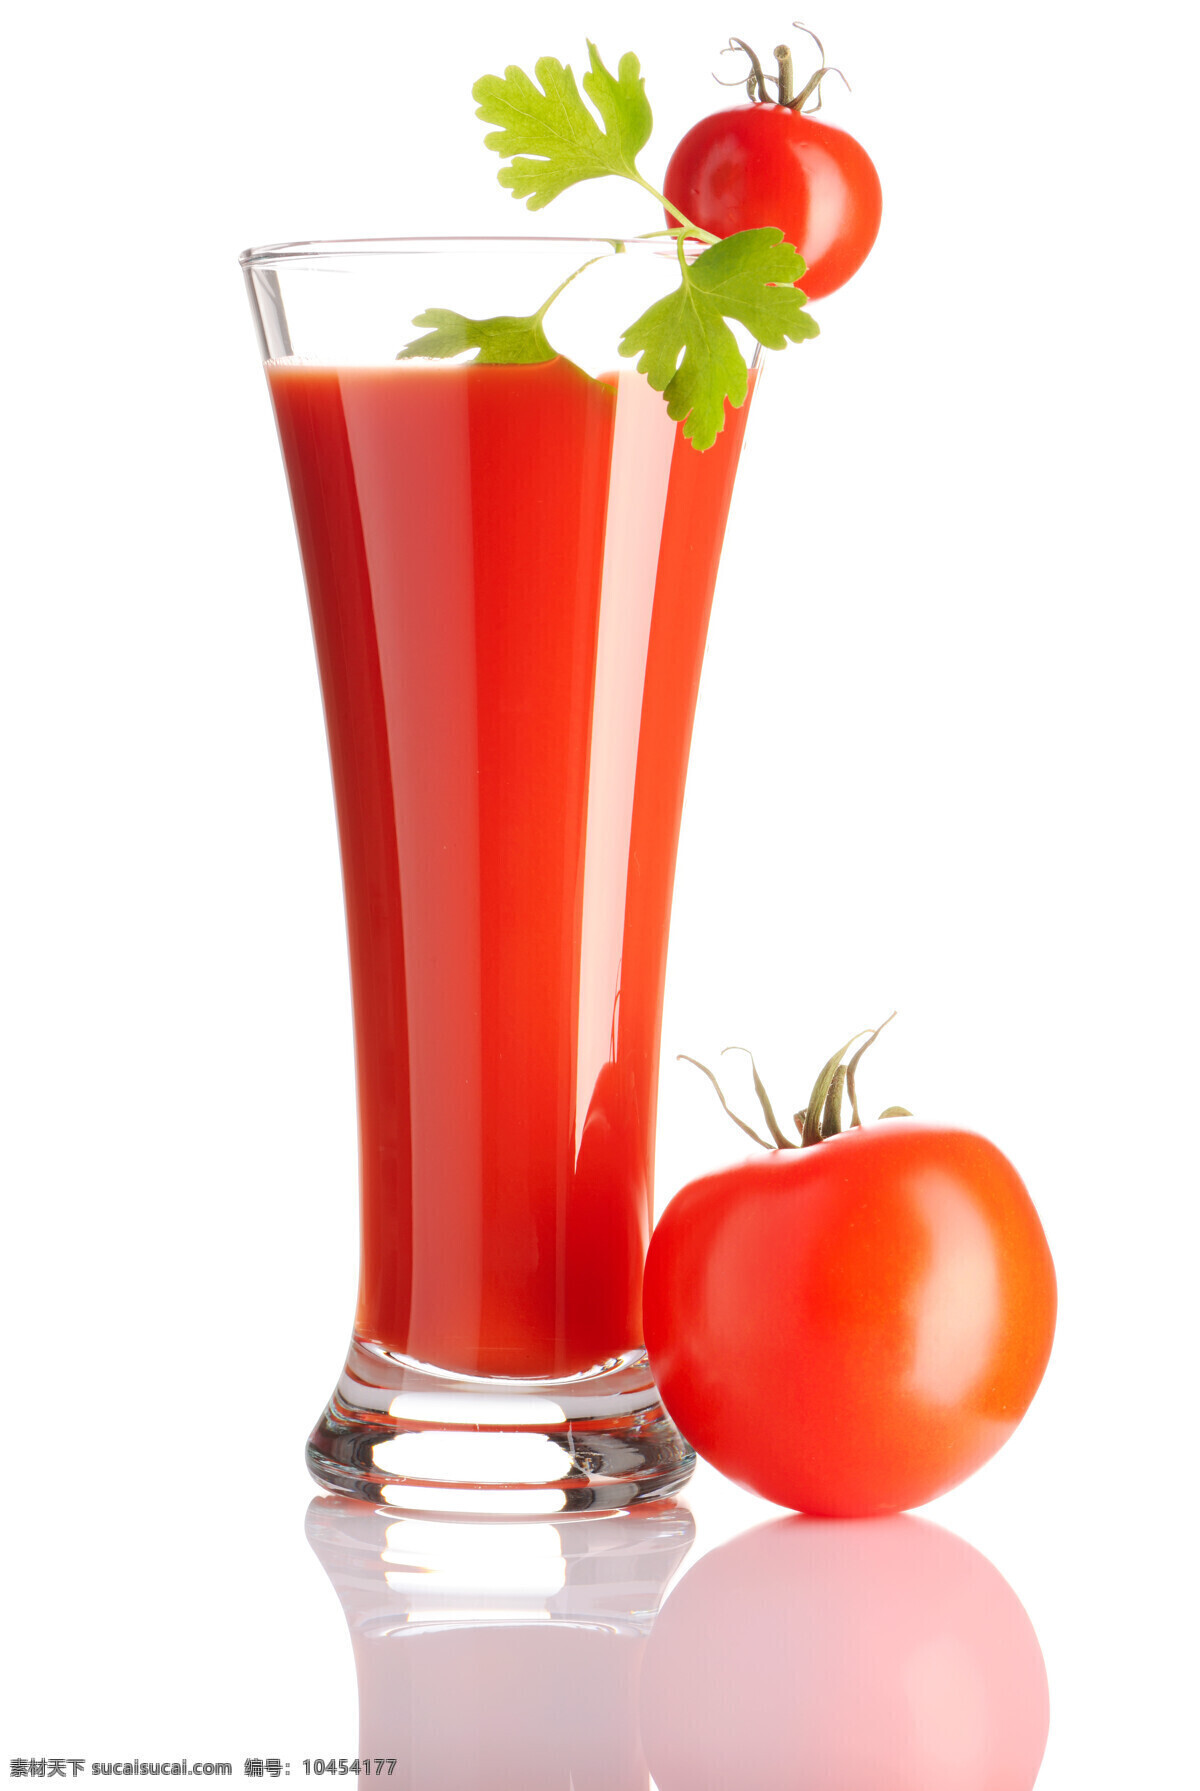 番茄汁 西红柿 番茄 蔬菜汁 果汁饮料 酒类图片 餐饮美食